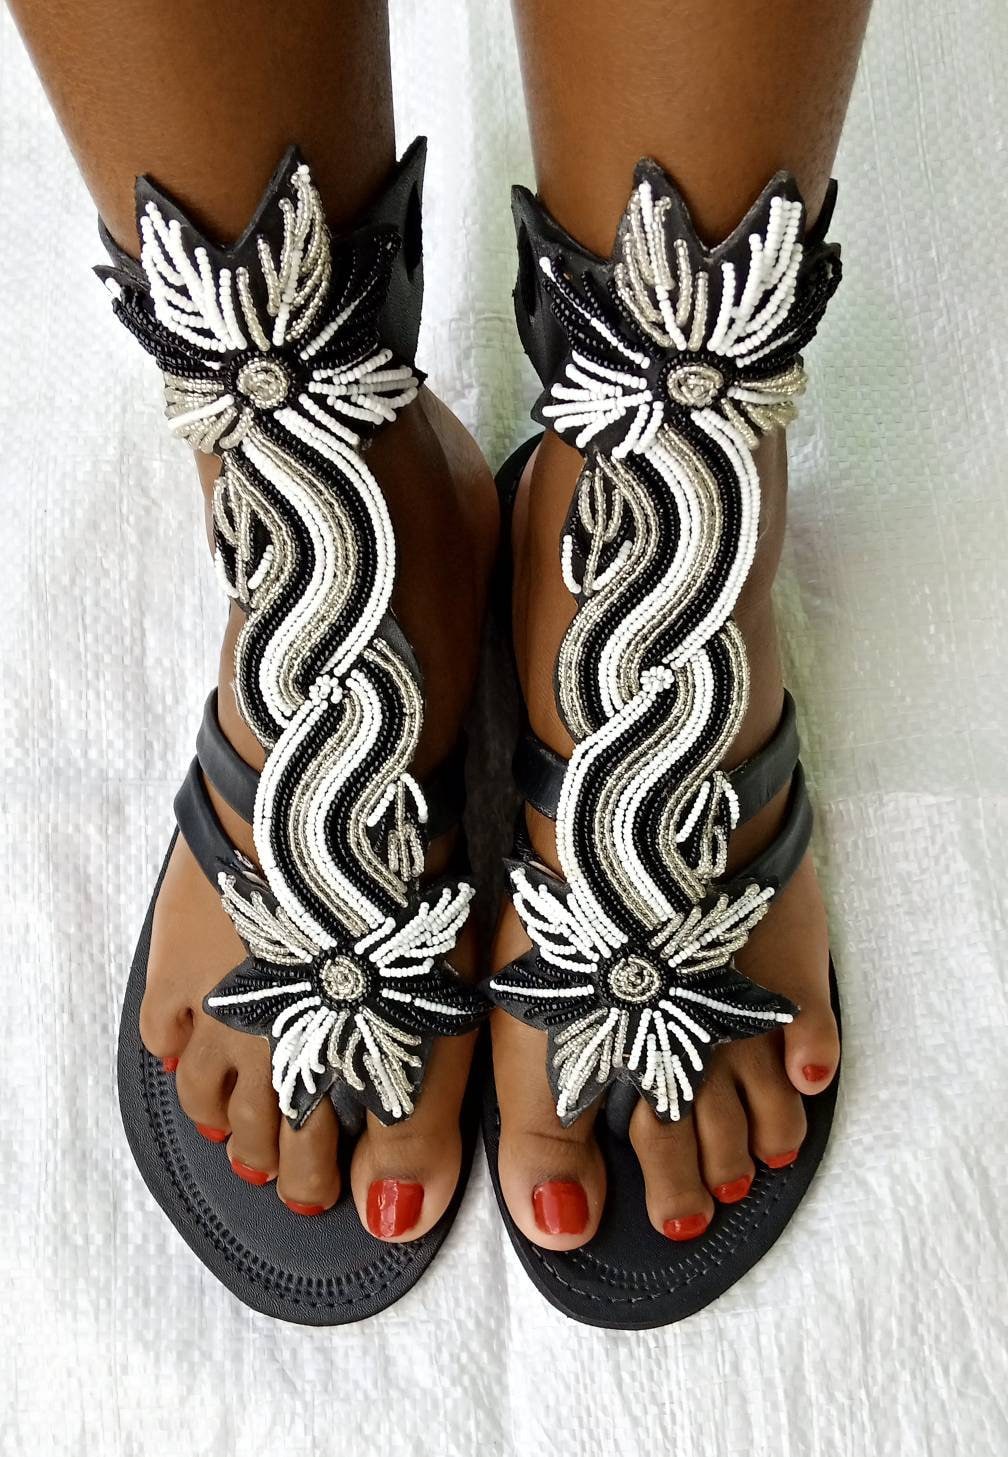 ON SALE African Gladiator Sandal/black Sandals/sandals for - Etsy